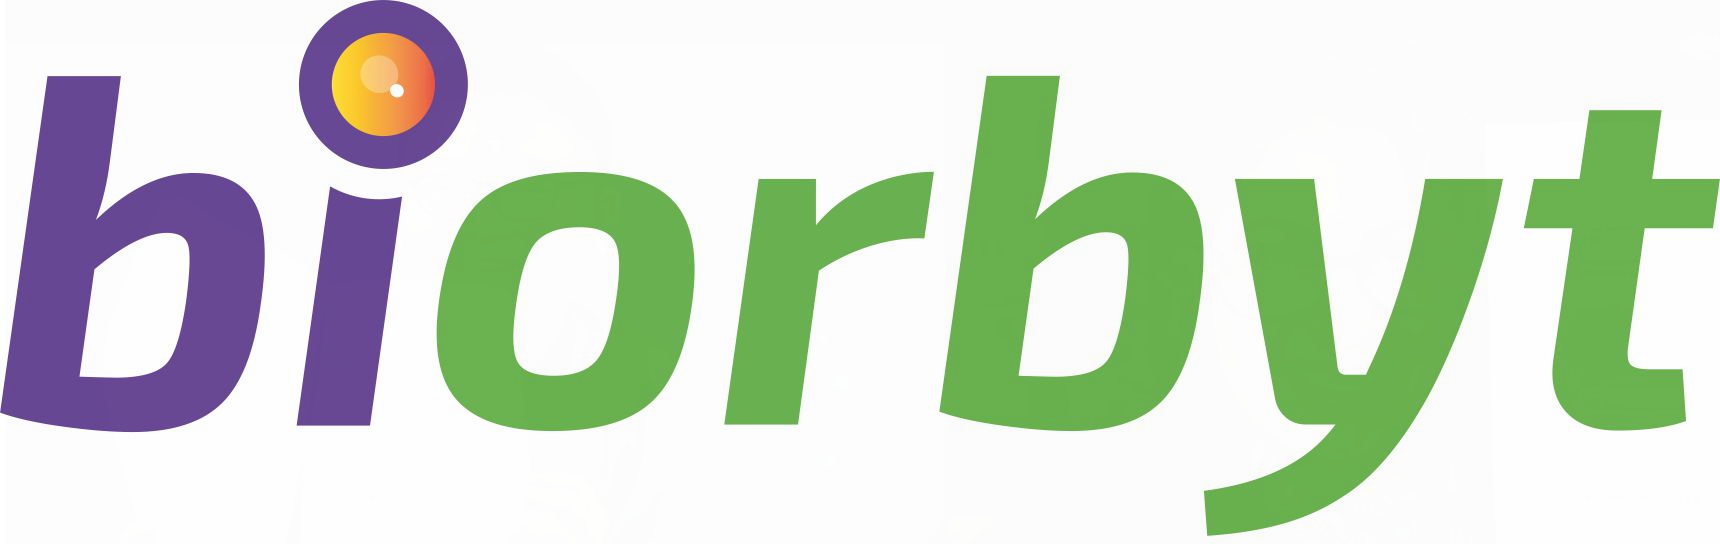 biorbyt-sare-res-logo-ma-suunka